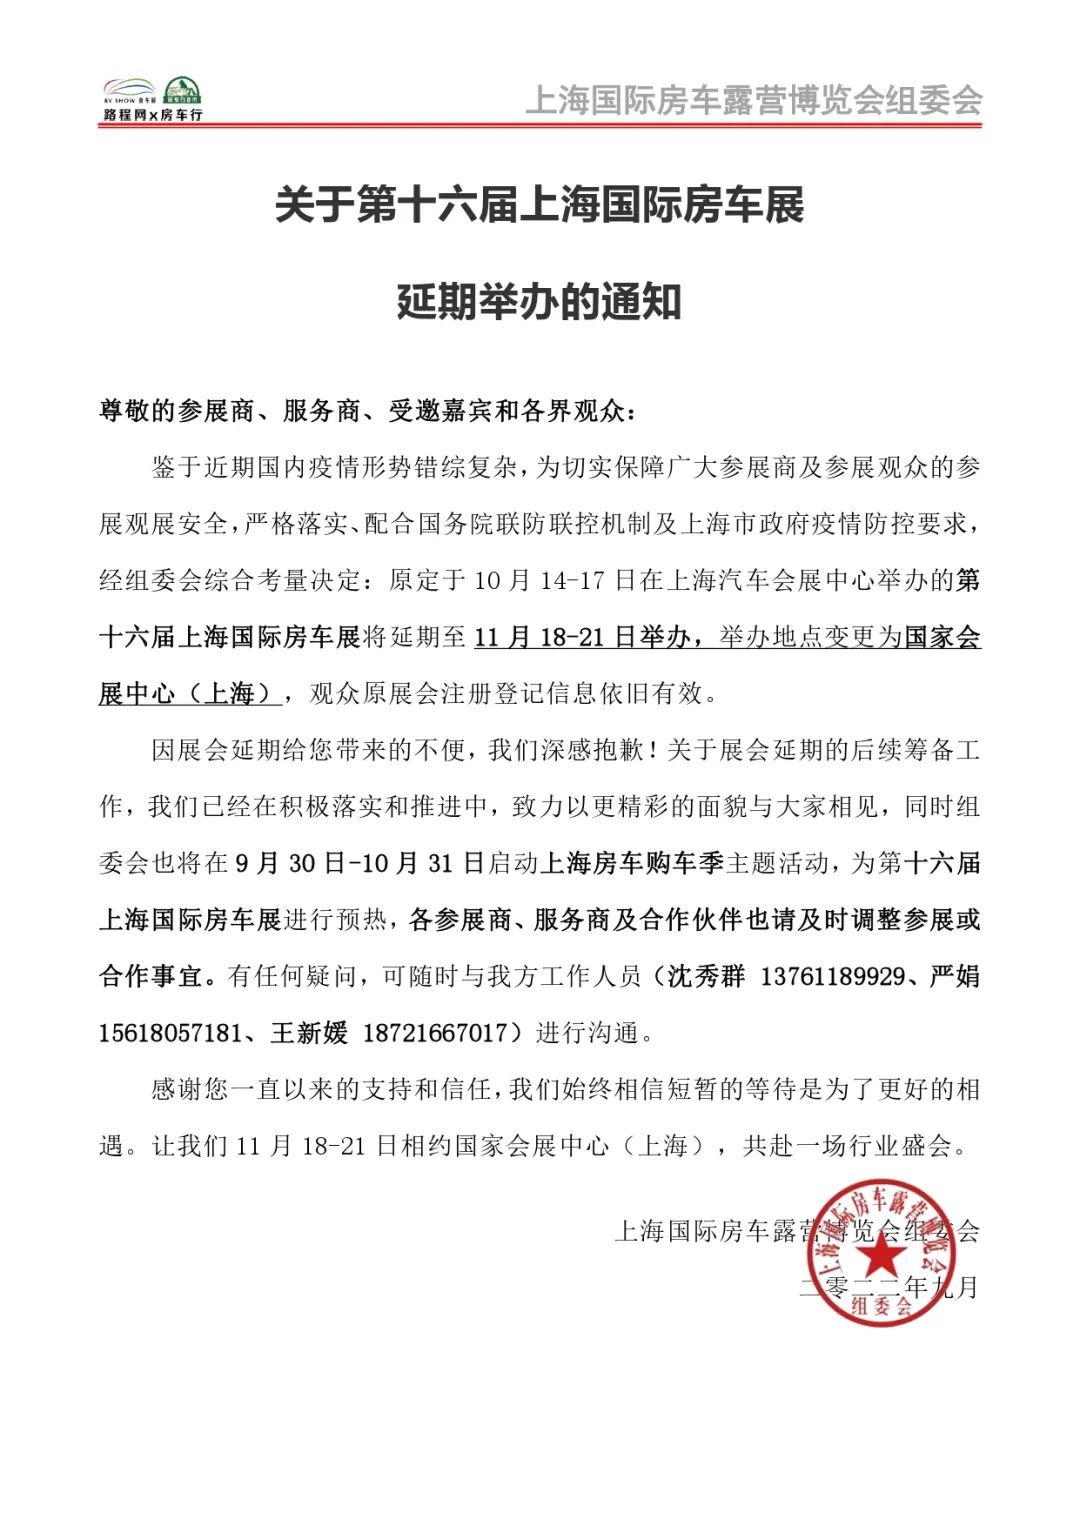 上海国际房车展延期